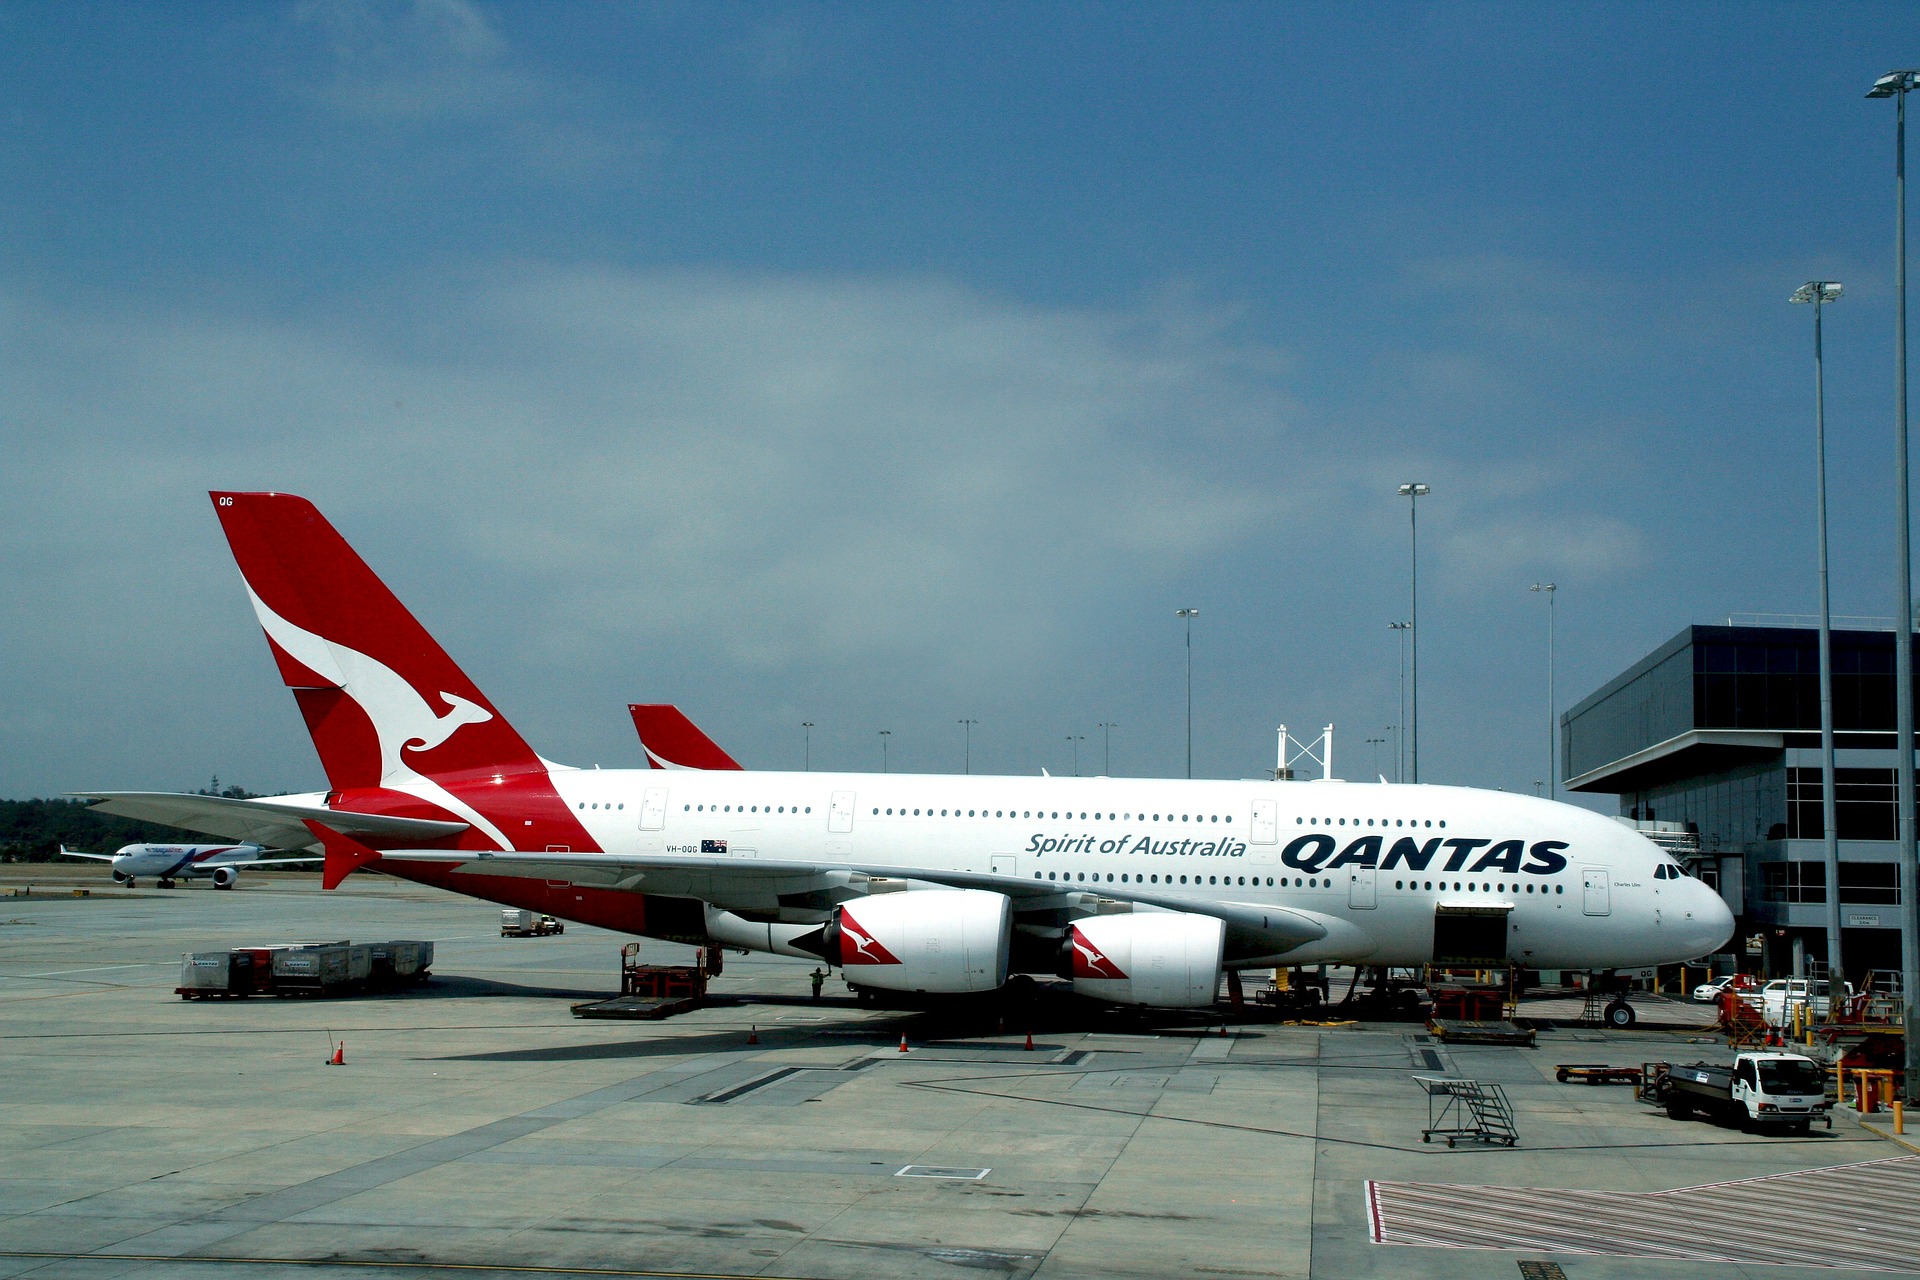 Qantas first class